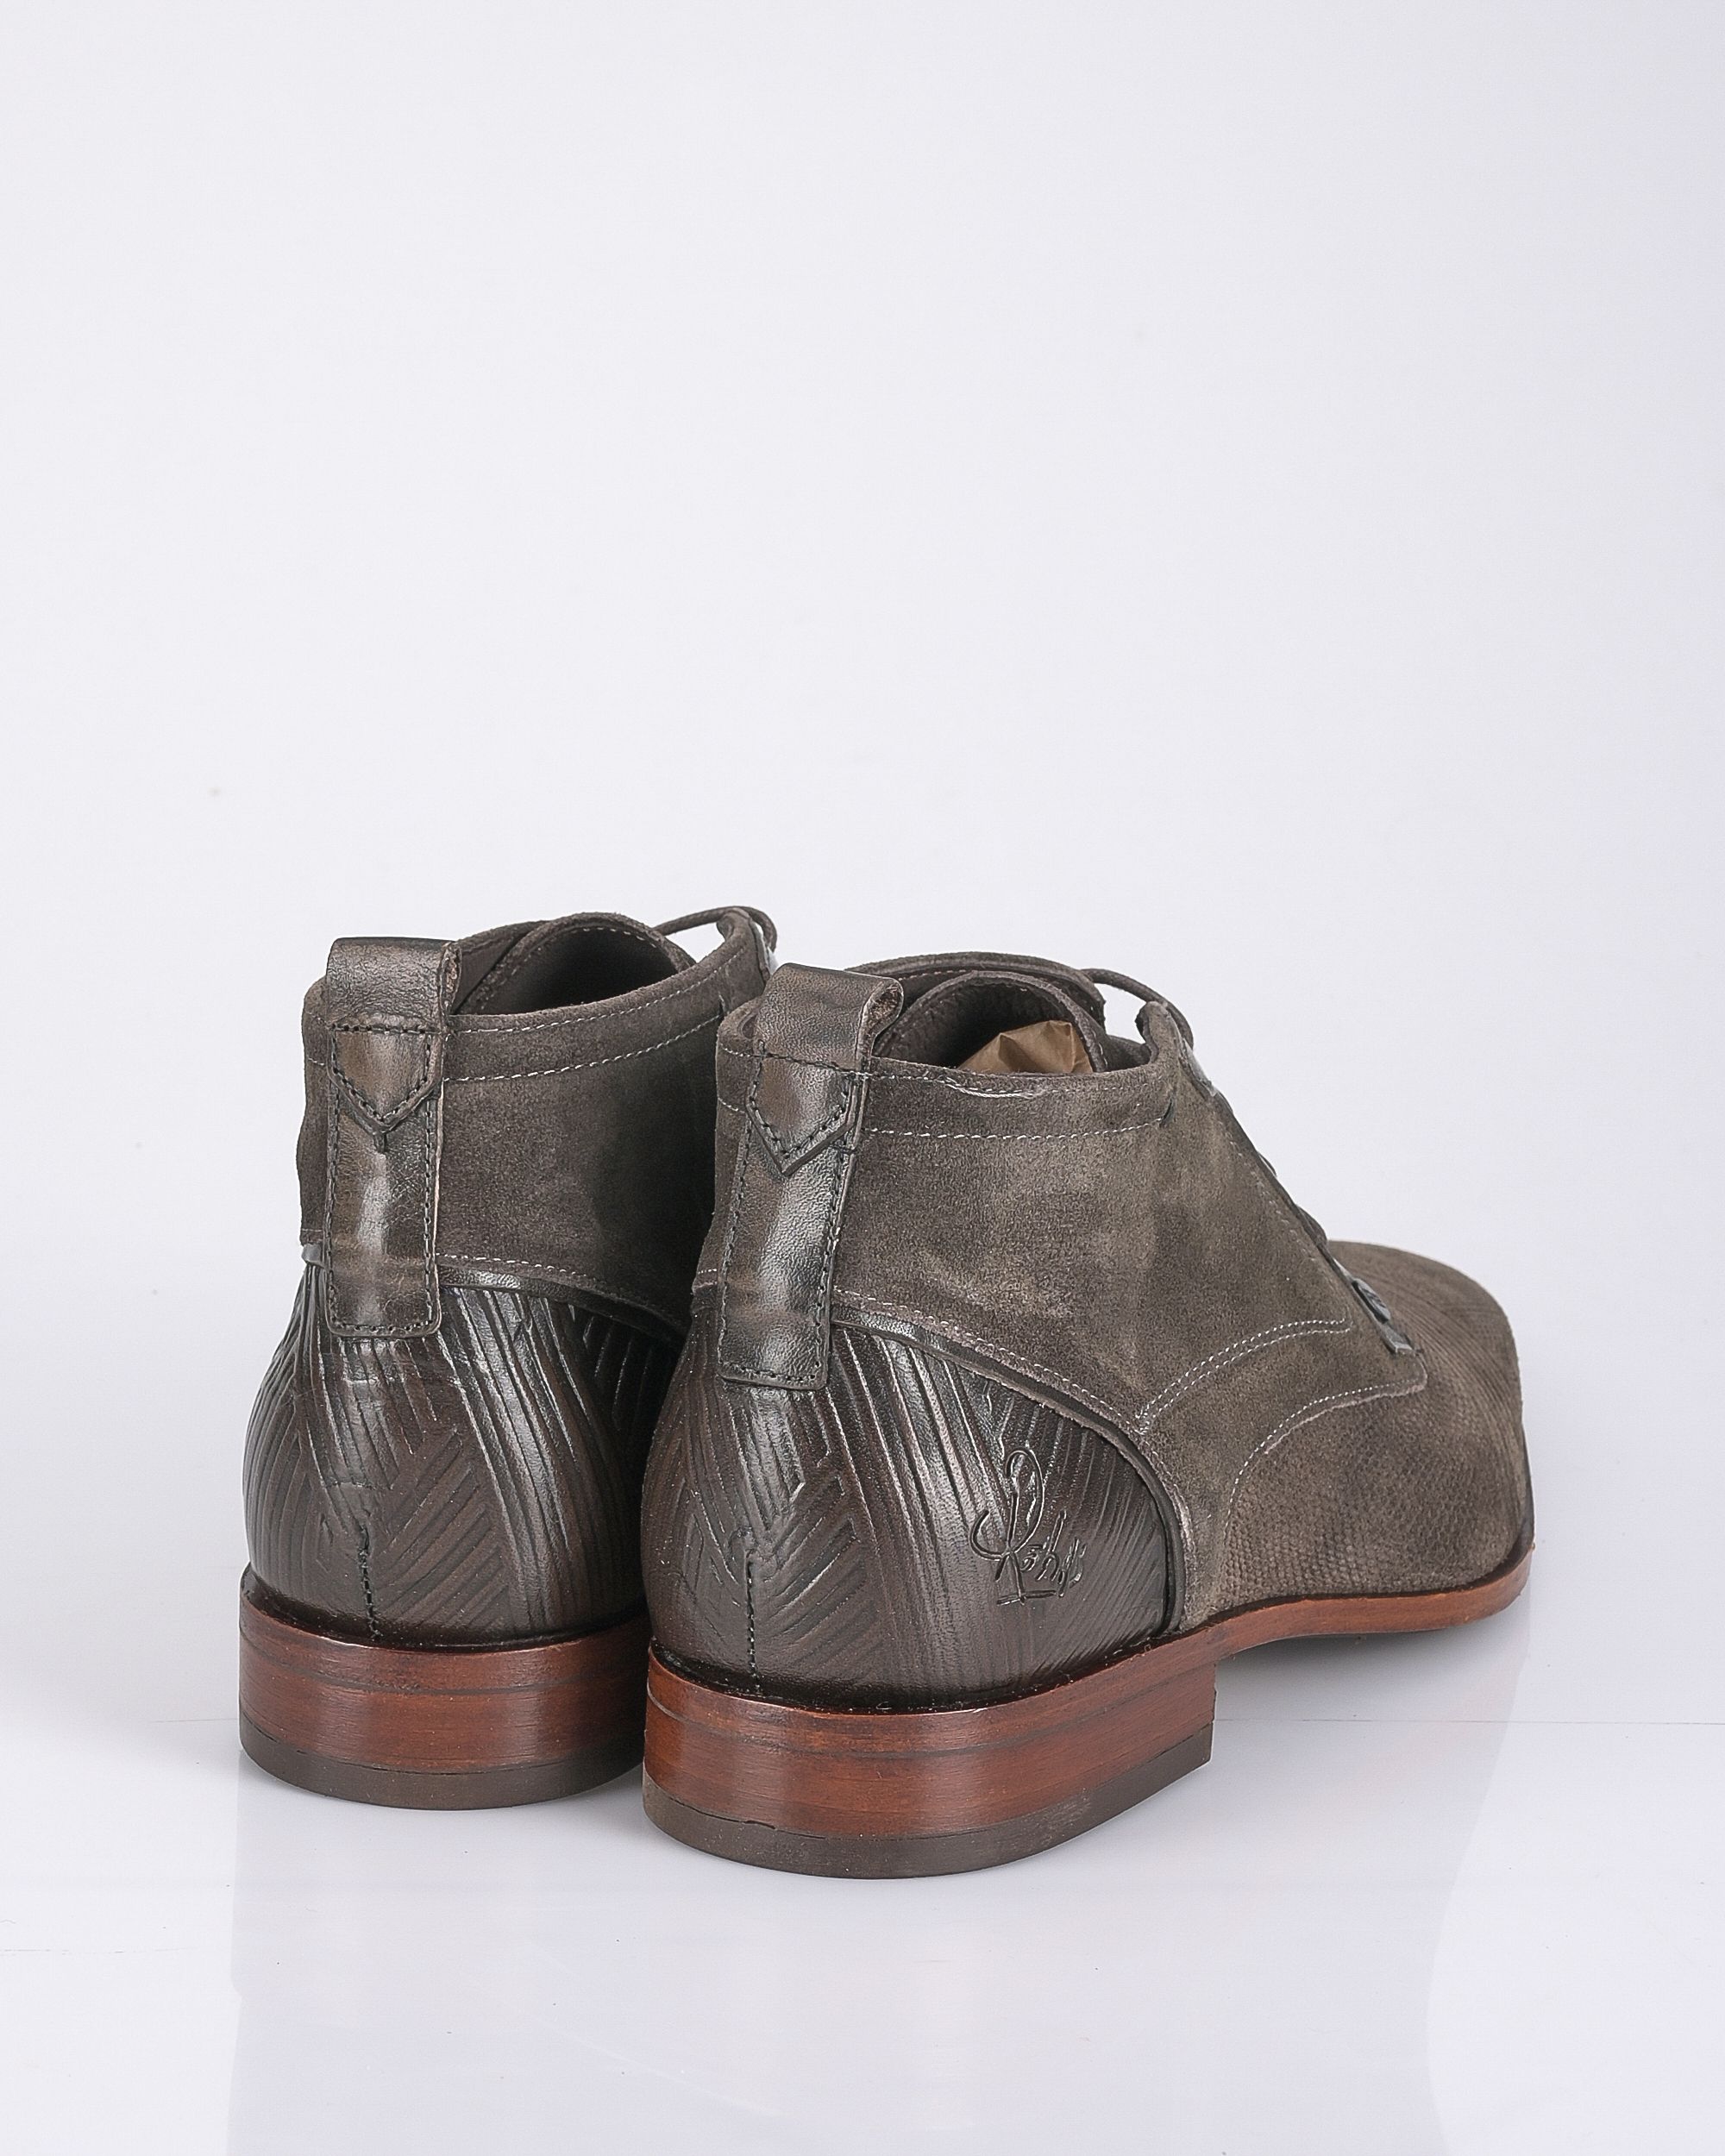 REHAB Geklede schoenen Bruin 089141-001-41